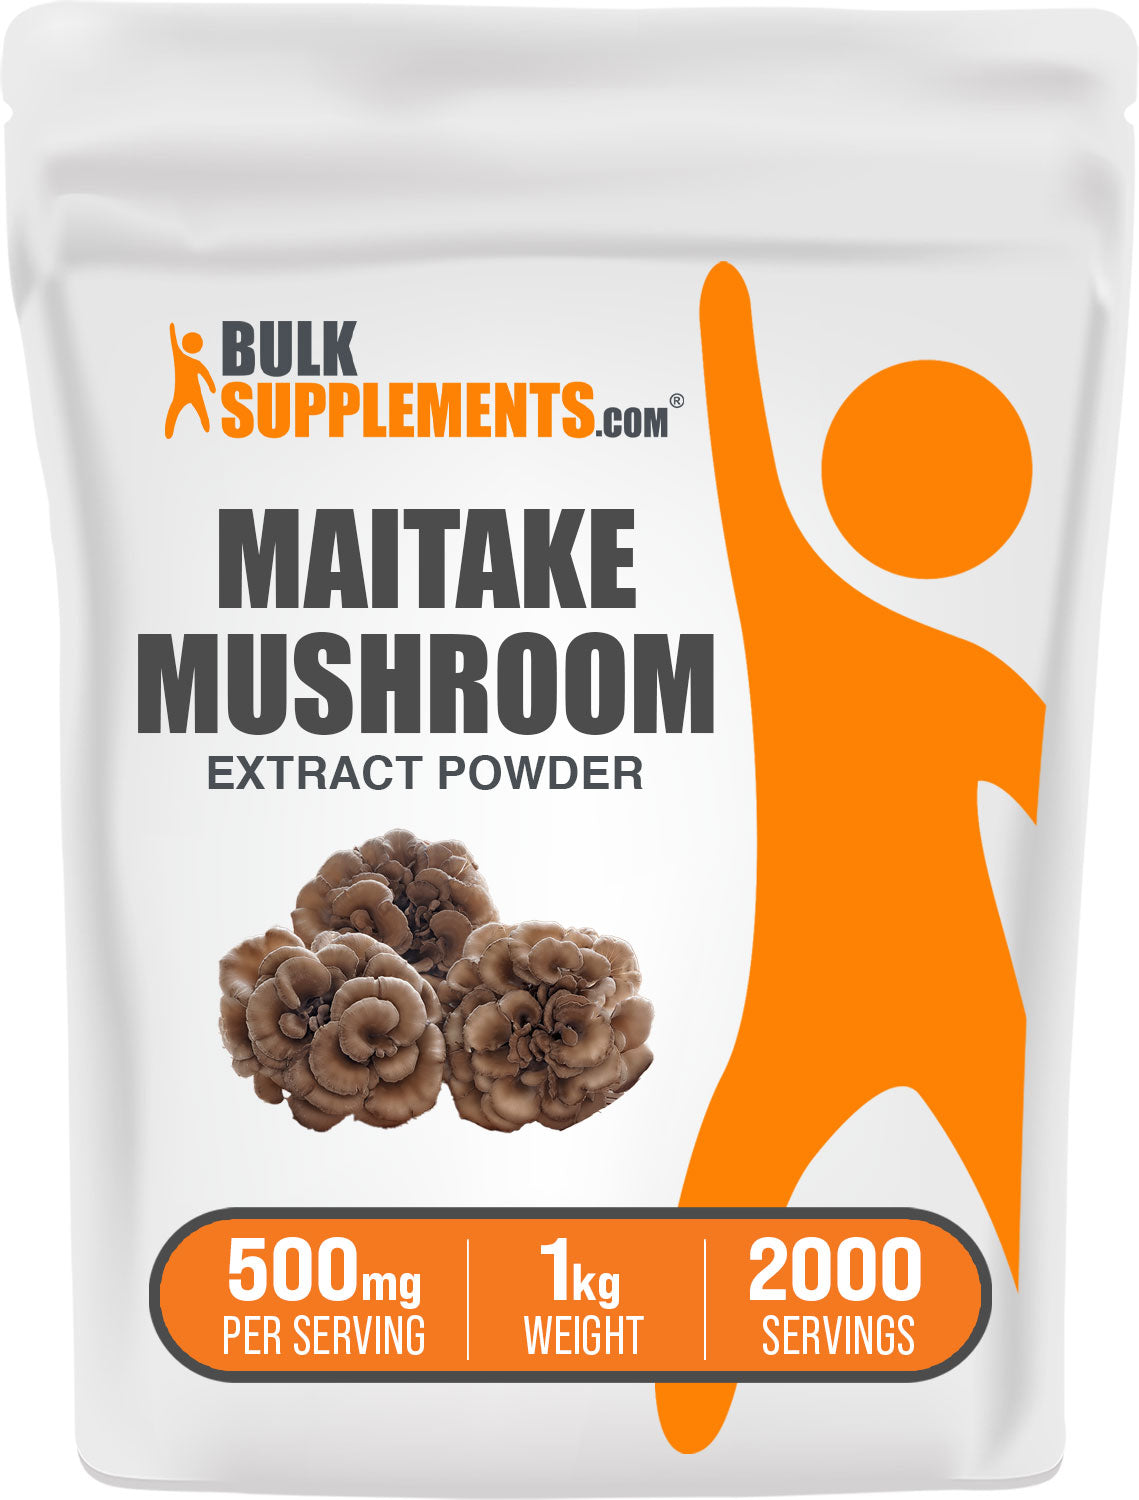 Maitake Mushroom Extract Powder 1kg Bag